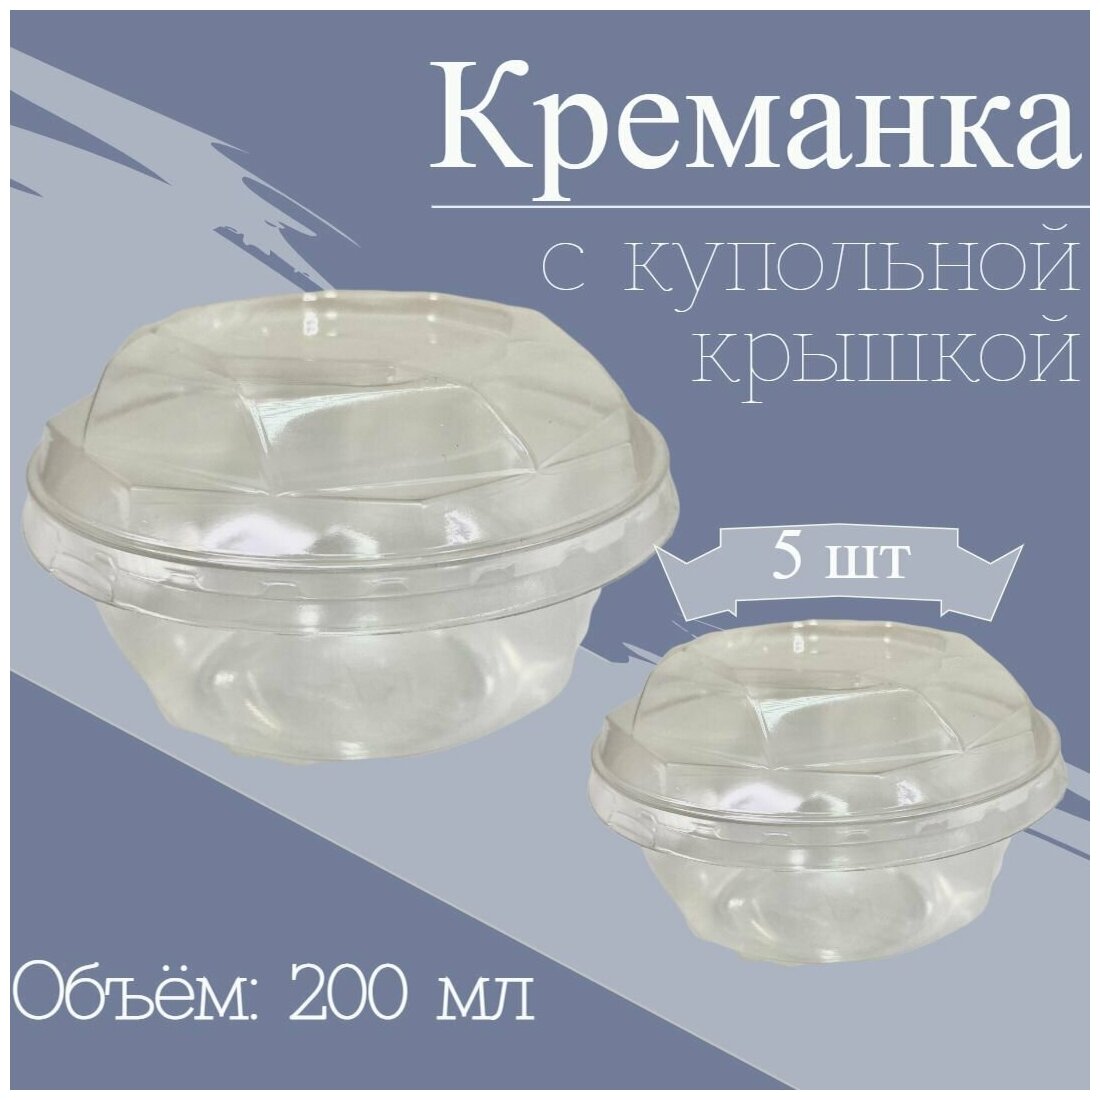 Креманки одноразовые Бриллиант с купольной крышкой, форма для десертов, салатов, 200 мл, ПЭТ, прозрачная, с крышкой, 5 шт.